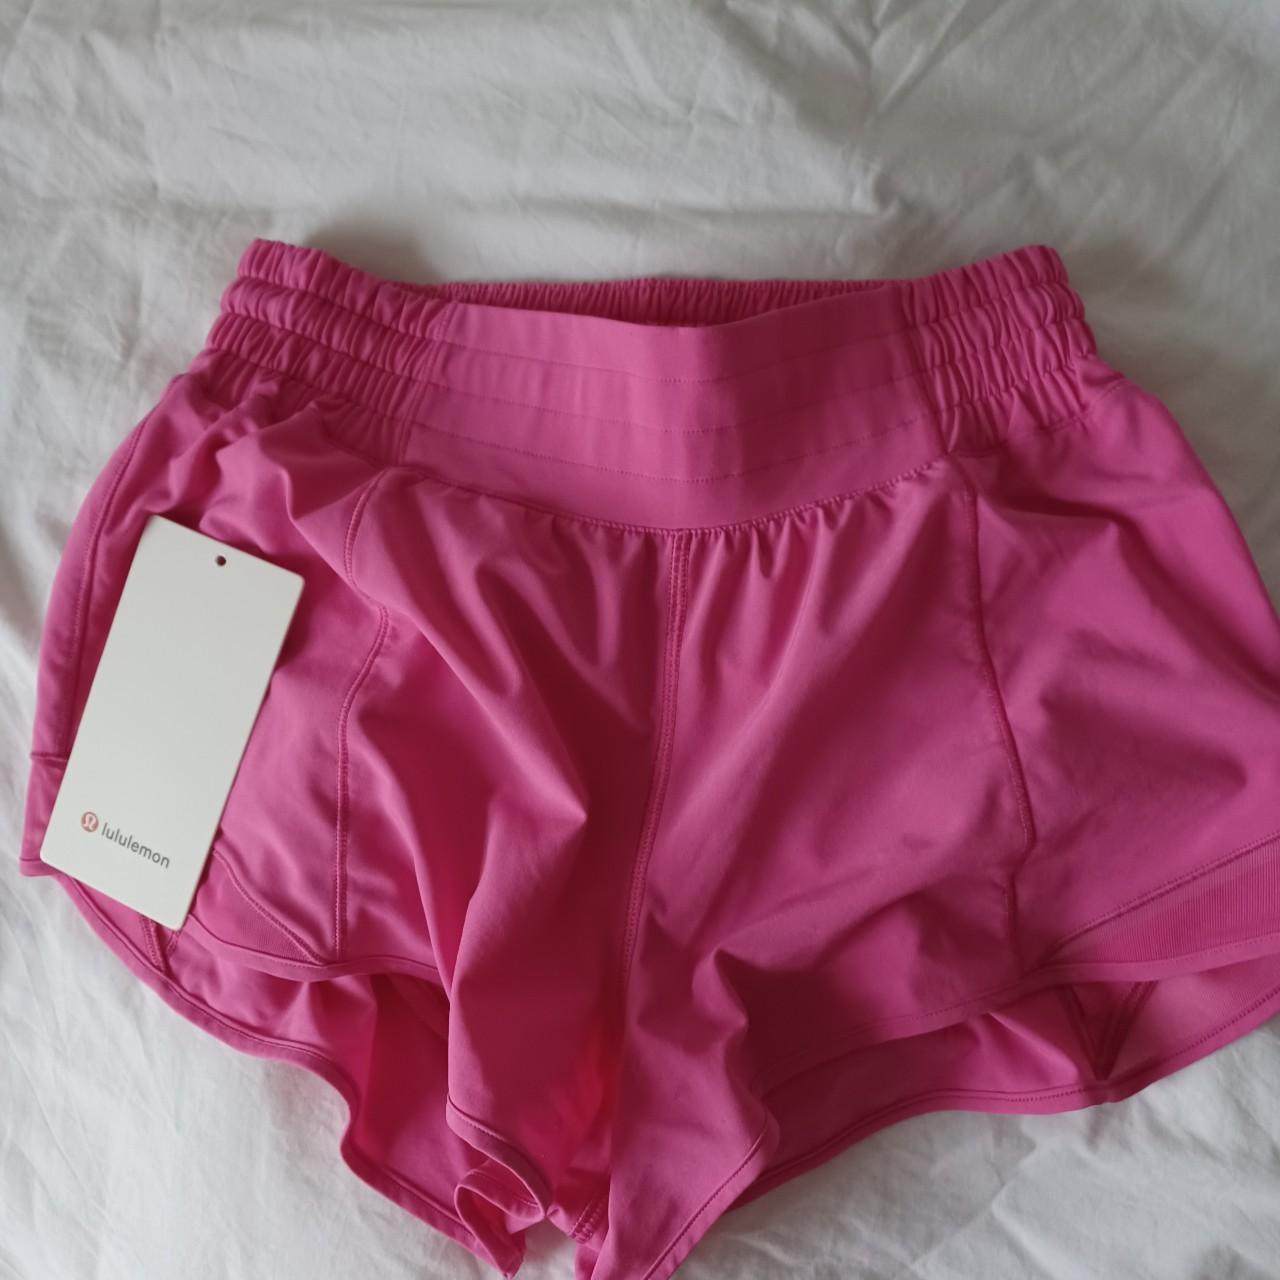 Sonic pink lululemon shorts. Bought for £48, I... - Depop